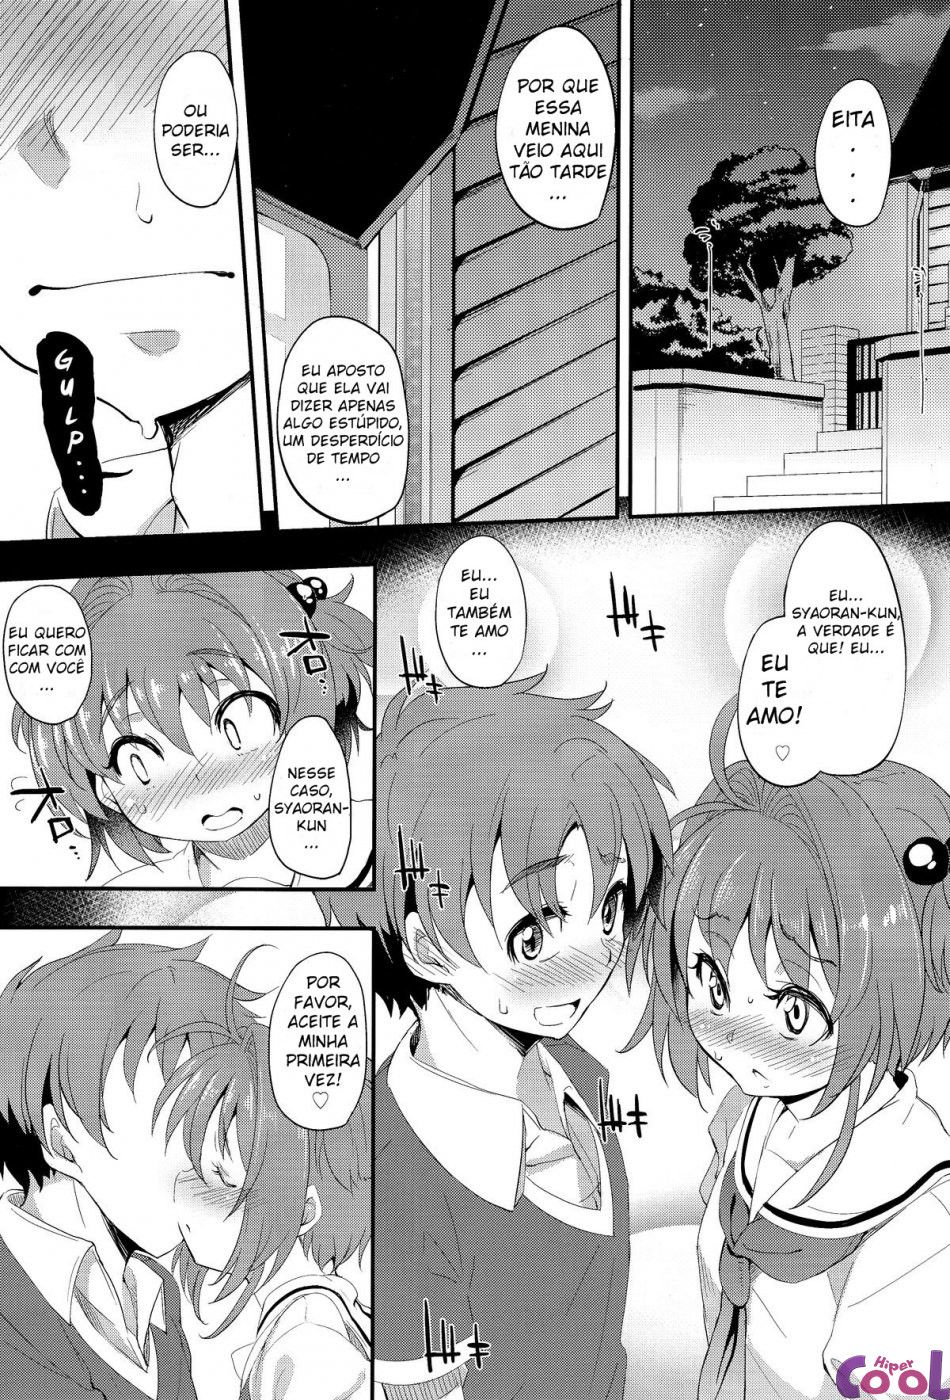 honto-no-watashi-chapter-10-page-07.jpg